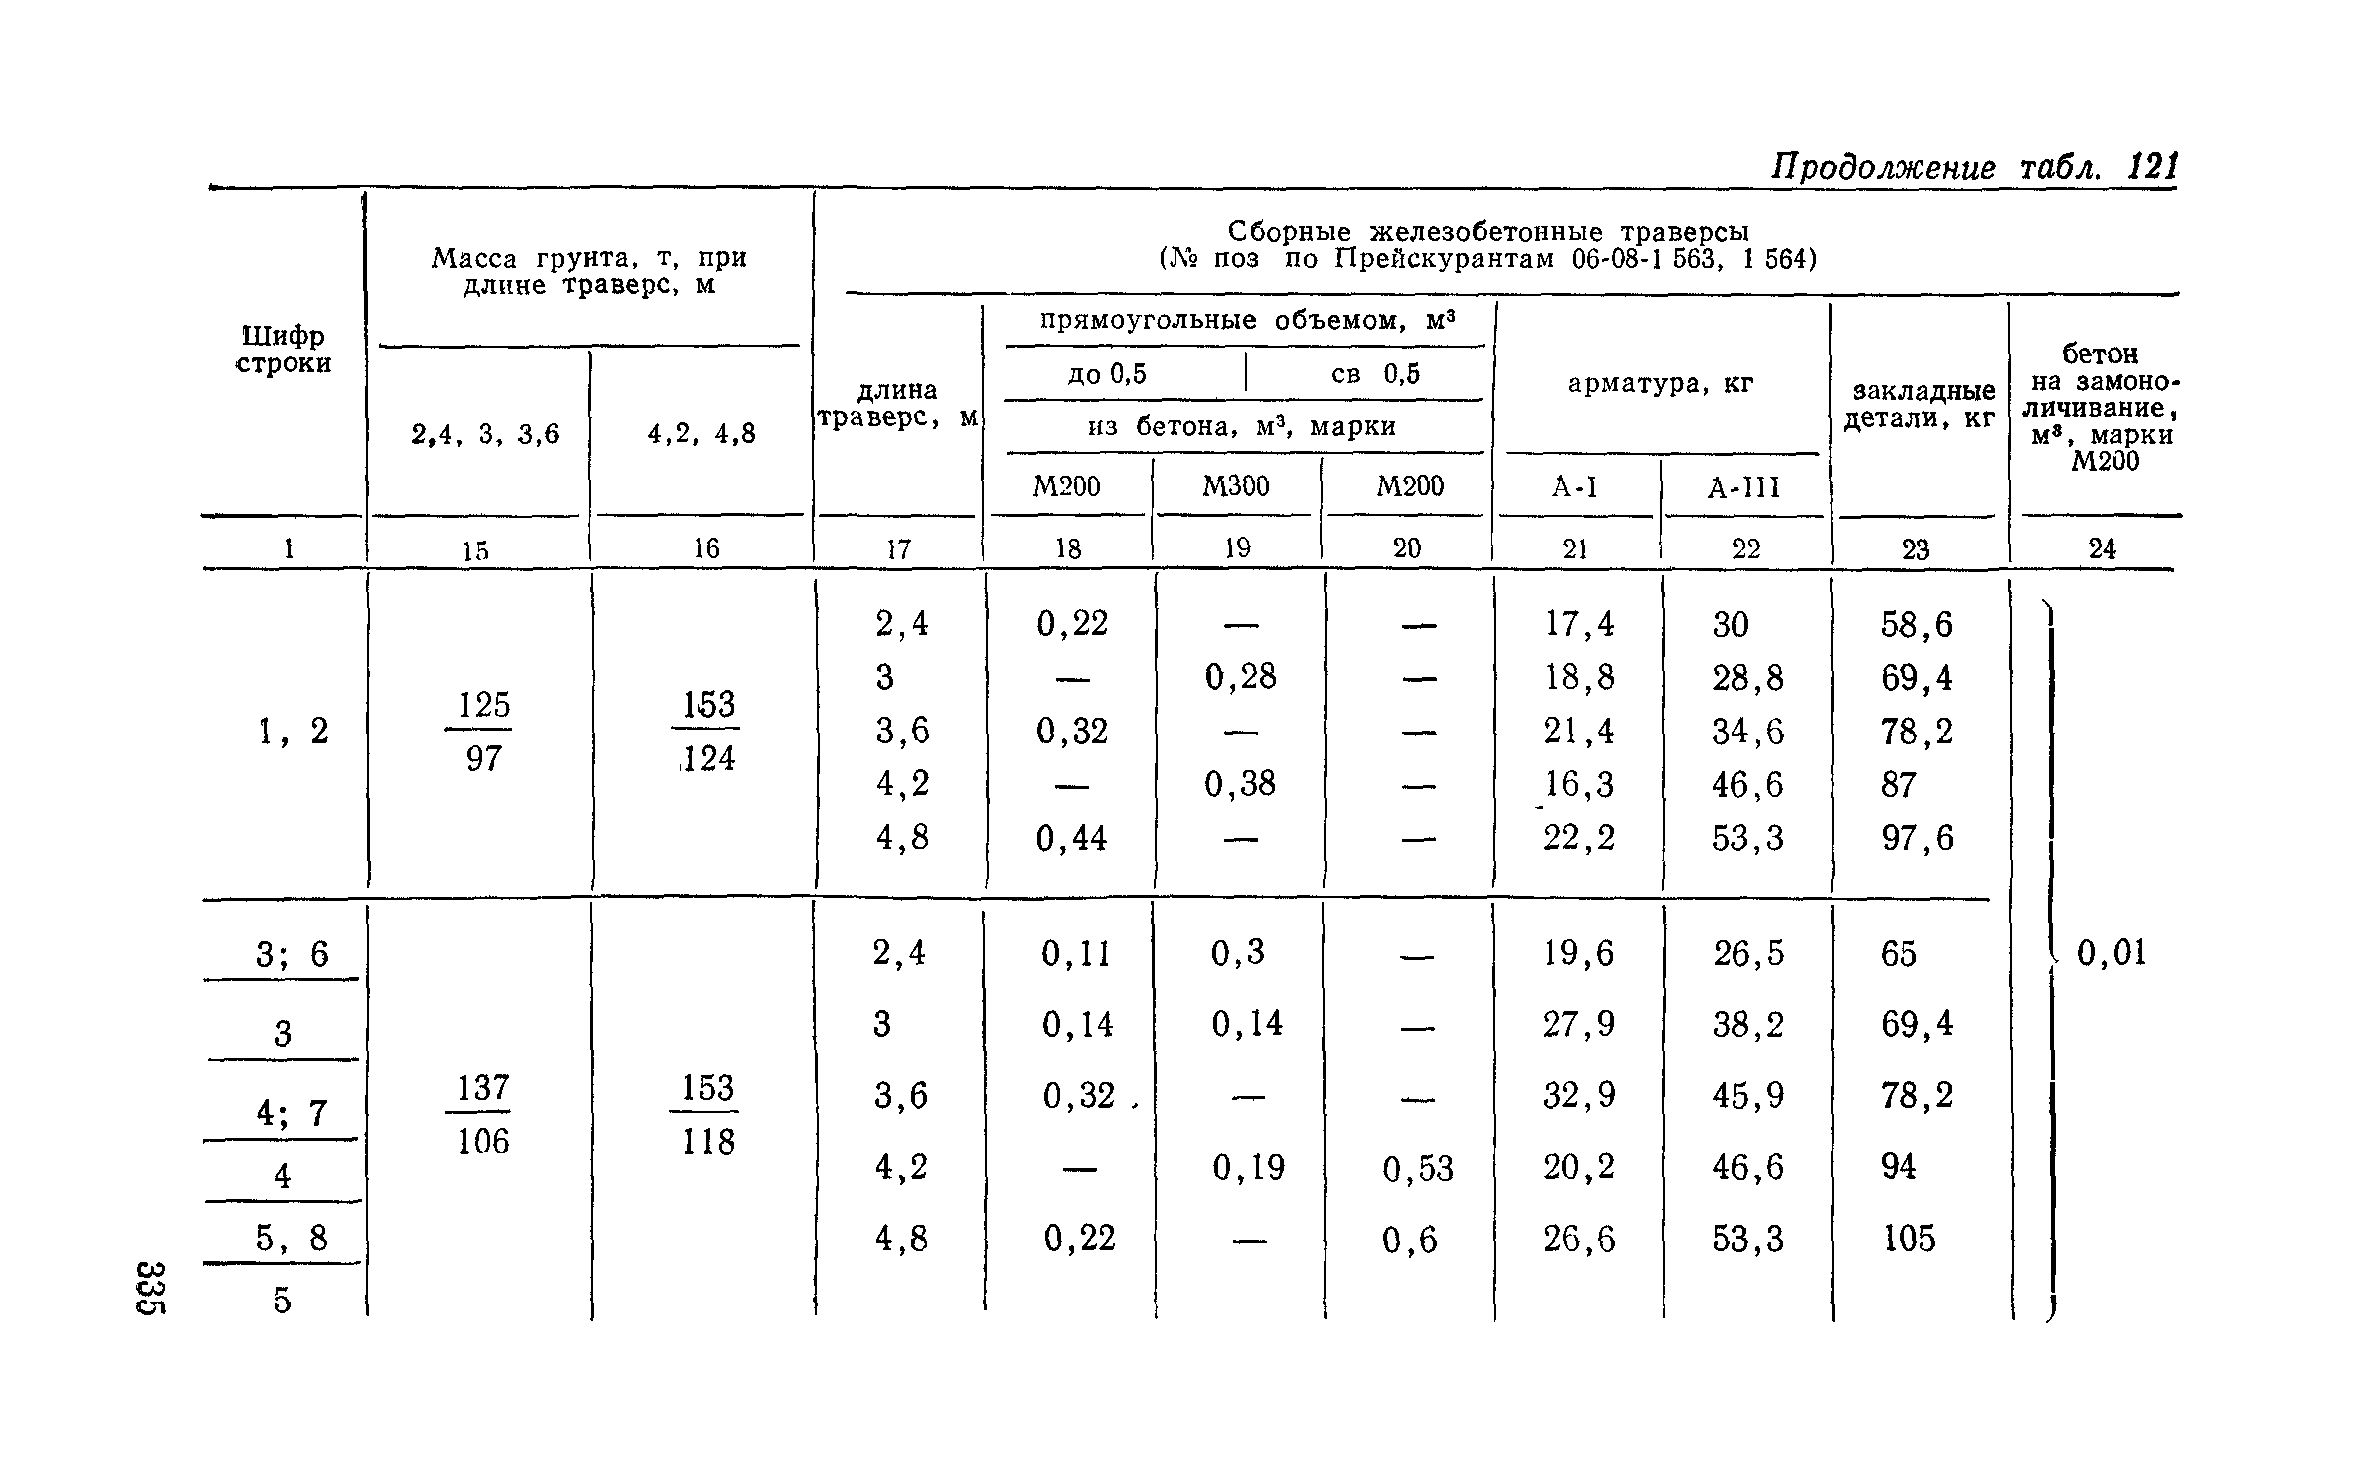  вес грунта 2 группы: Удельный вес грунта (таблица): 1, 2 группы